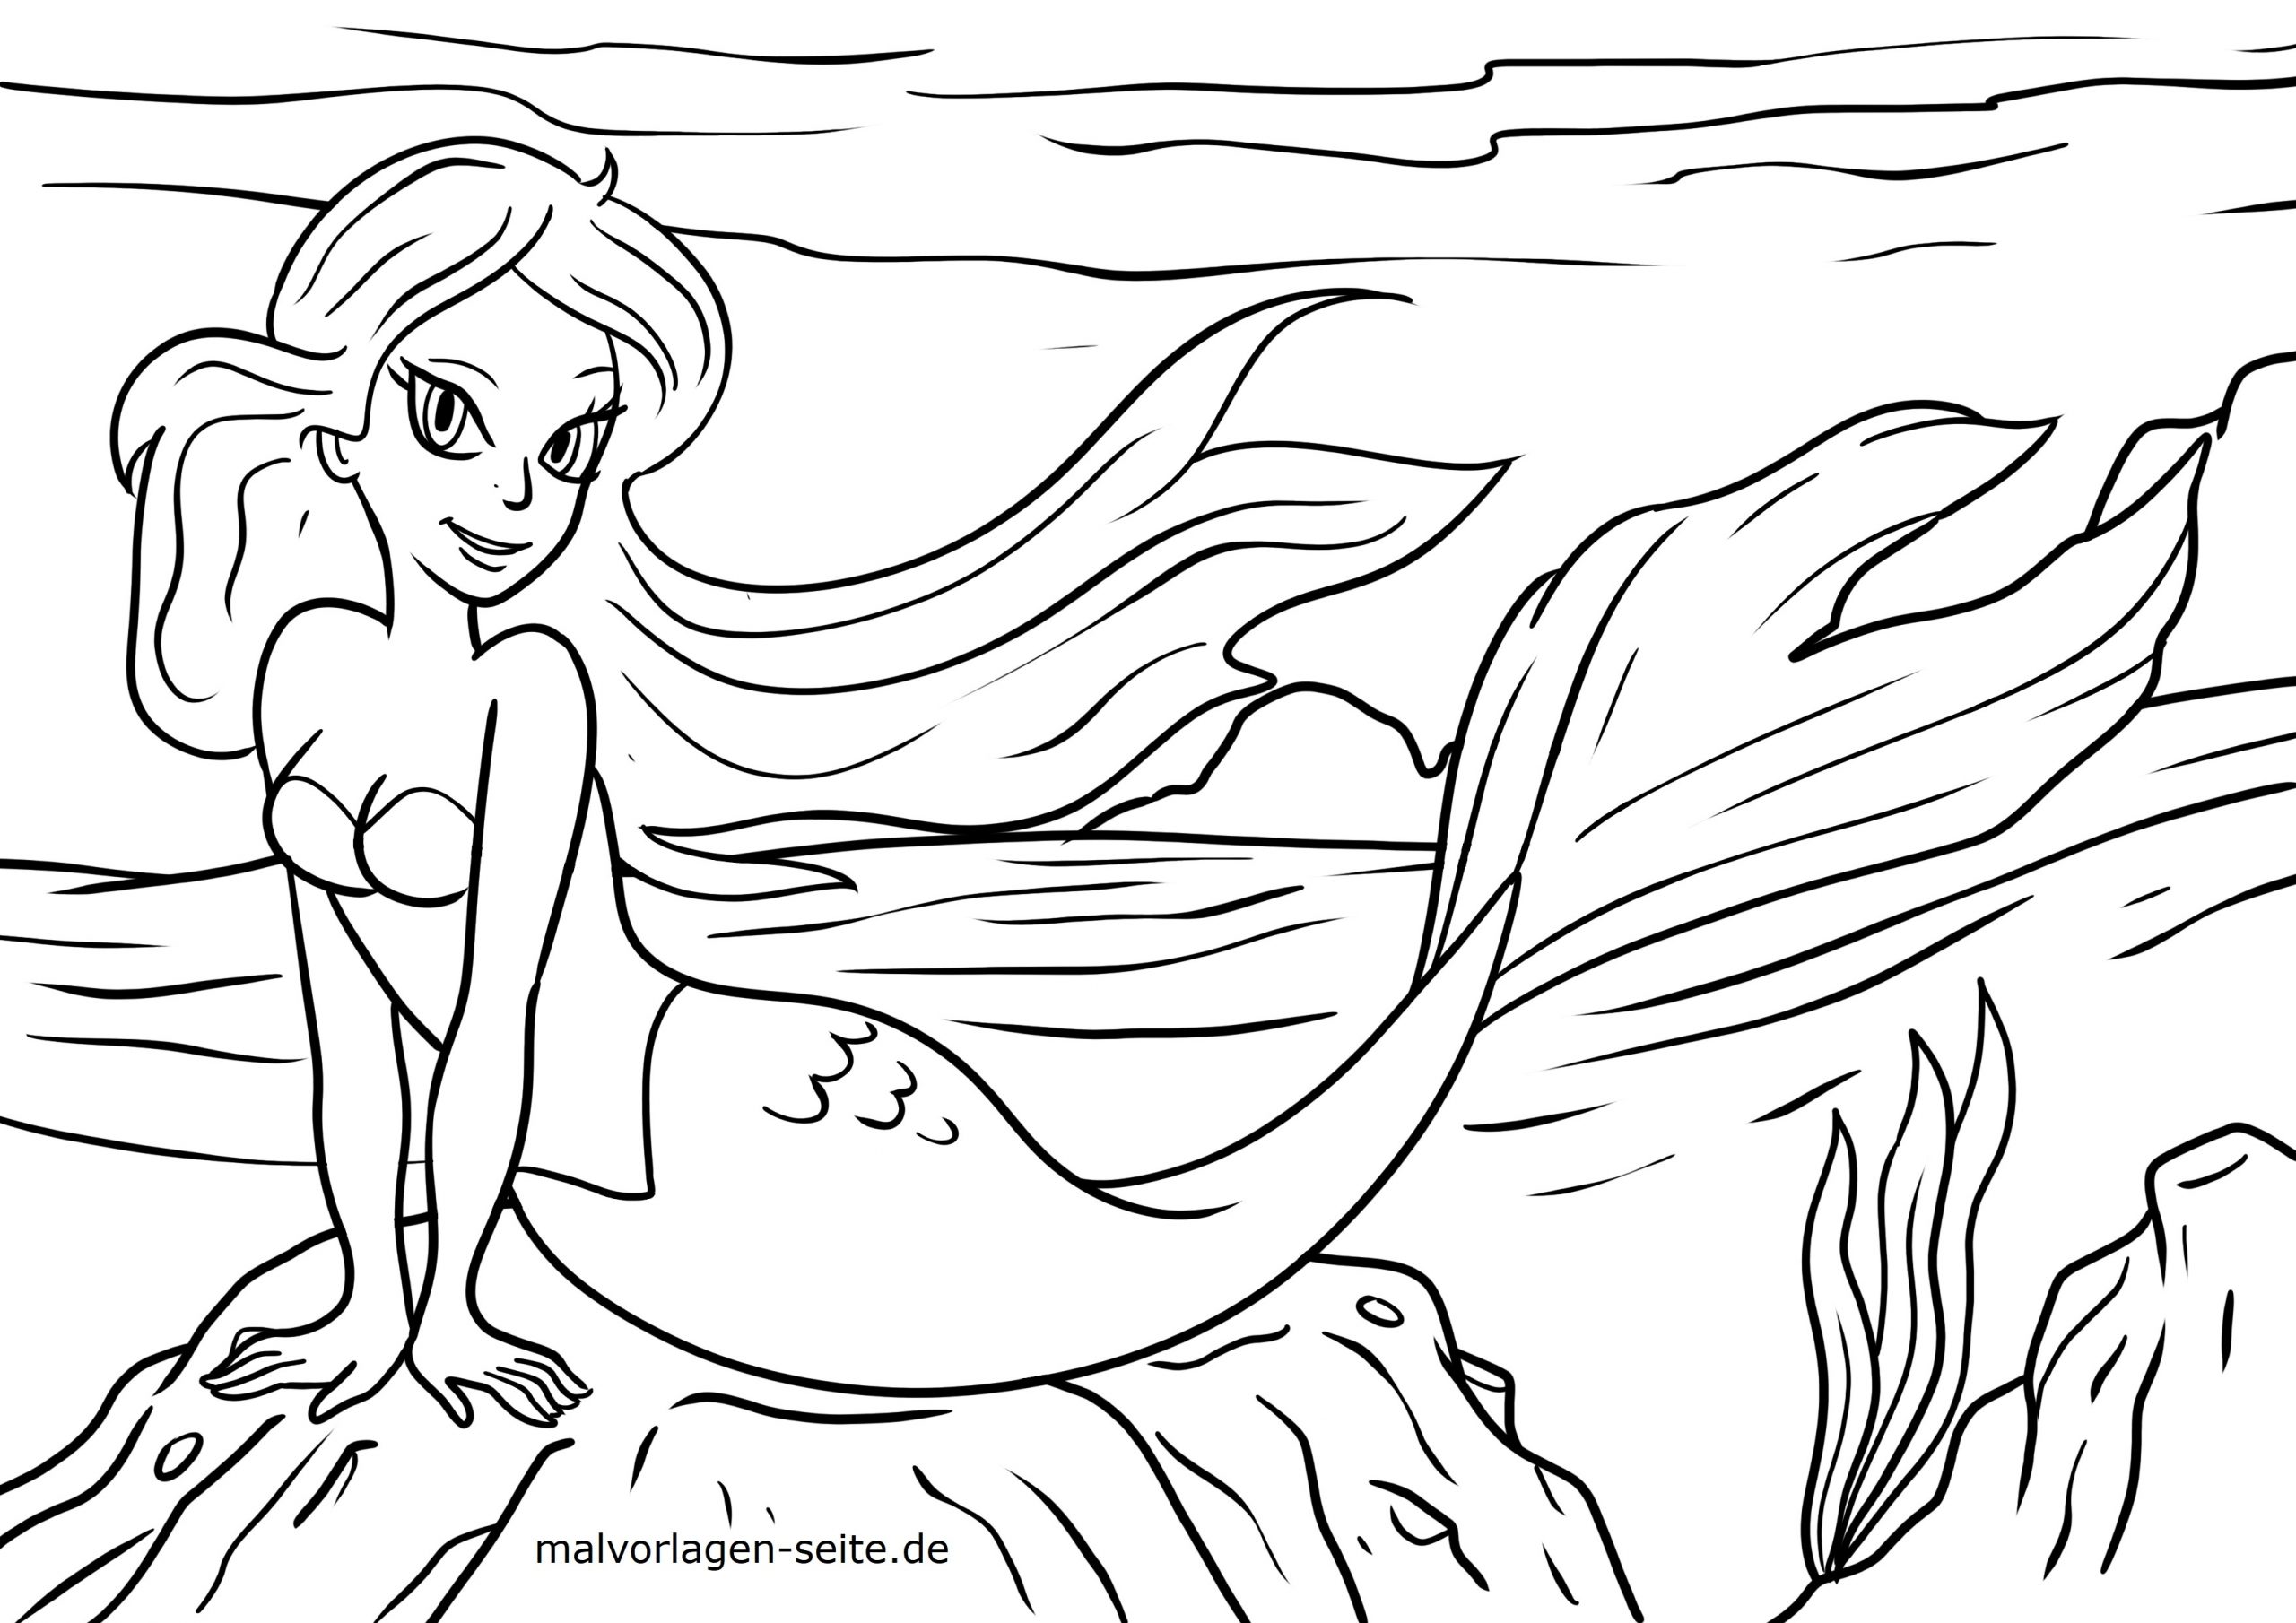 Malvorlage Meerjungfrau - Ausmalbilder Kostenlos Herunterladen mit Malvorlage Meerjungfrau